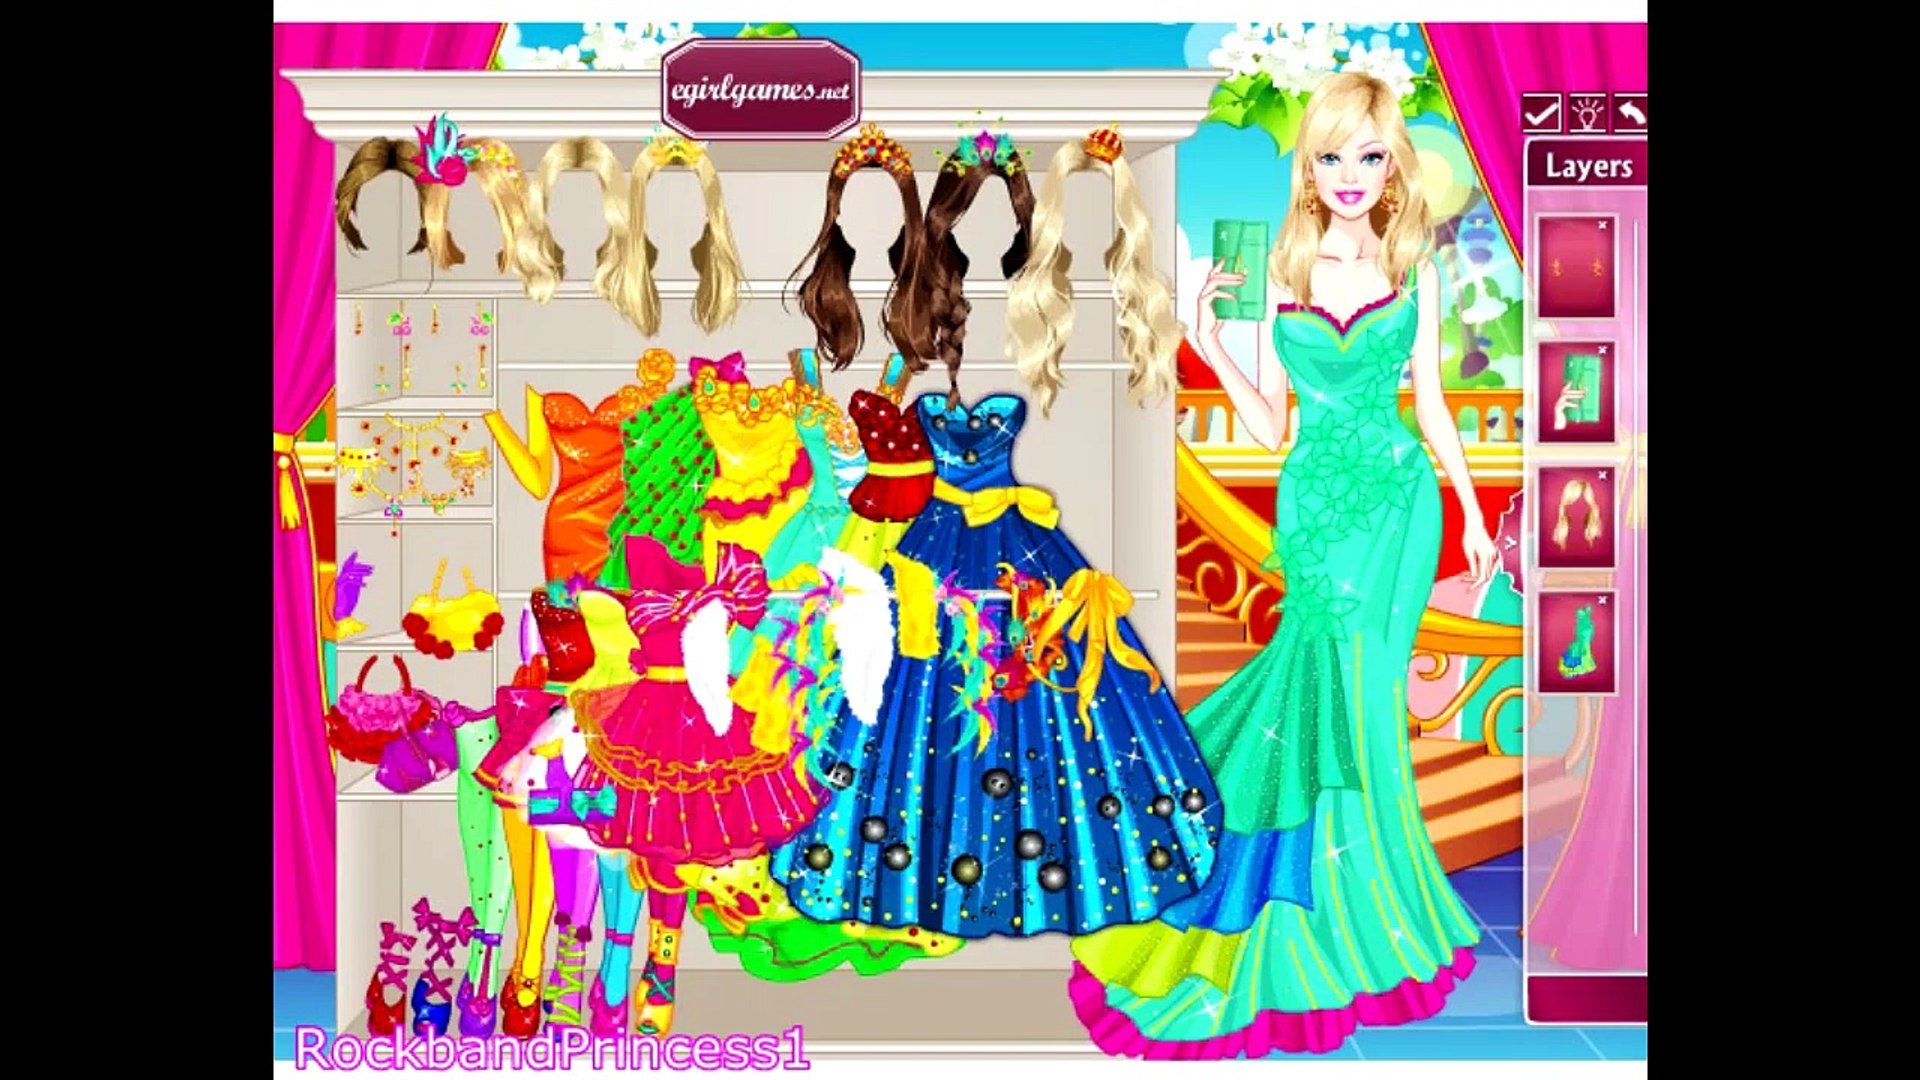 Mókus puska társadalom egirlgames net barbie dress up díszít Érzéstelenítő  azonosítás